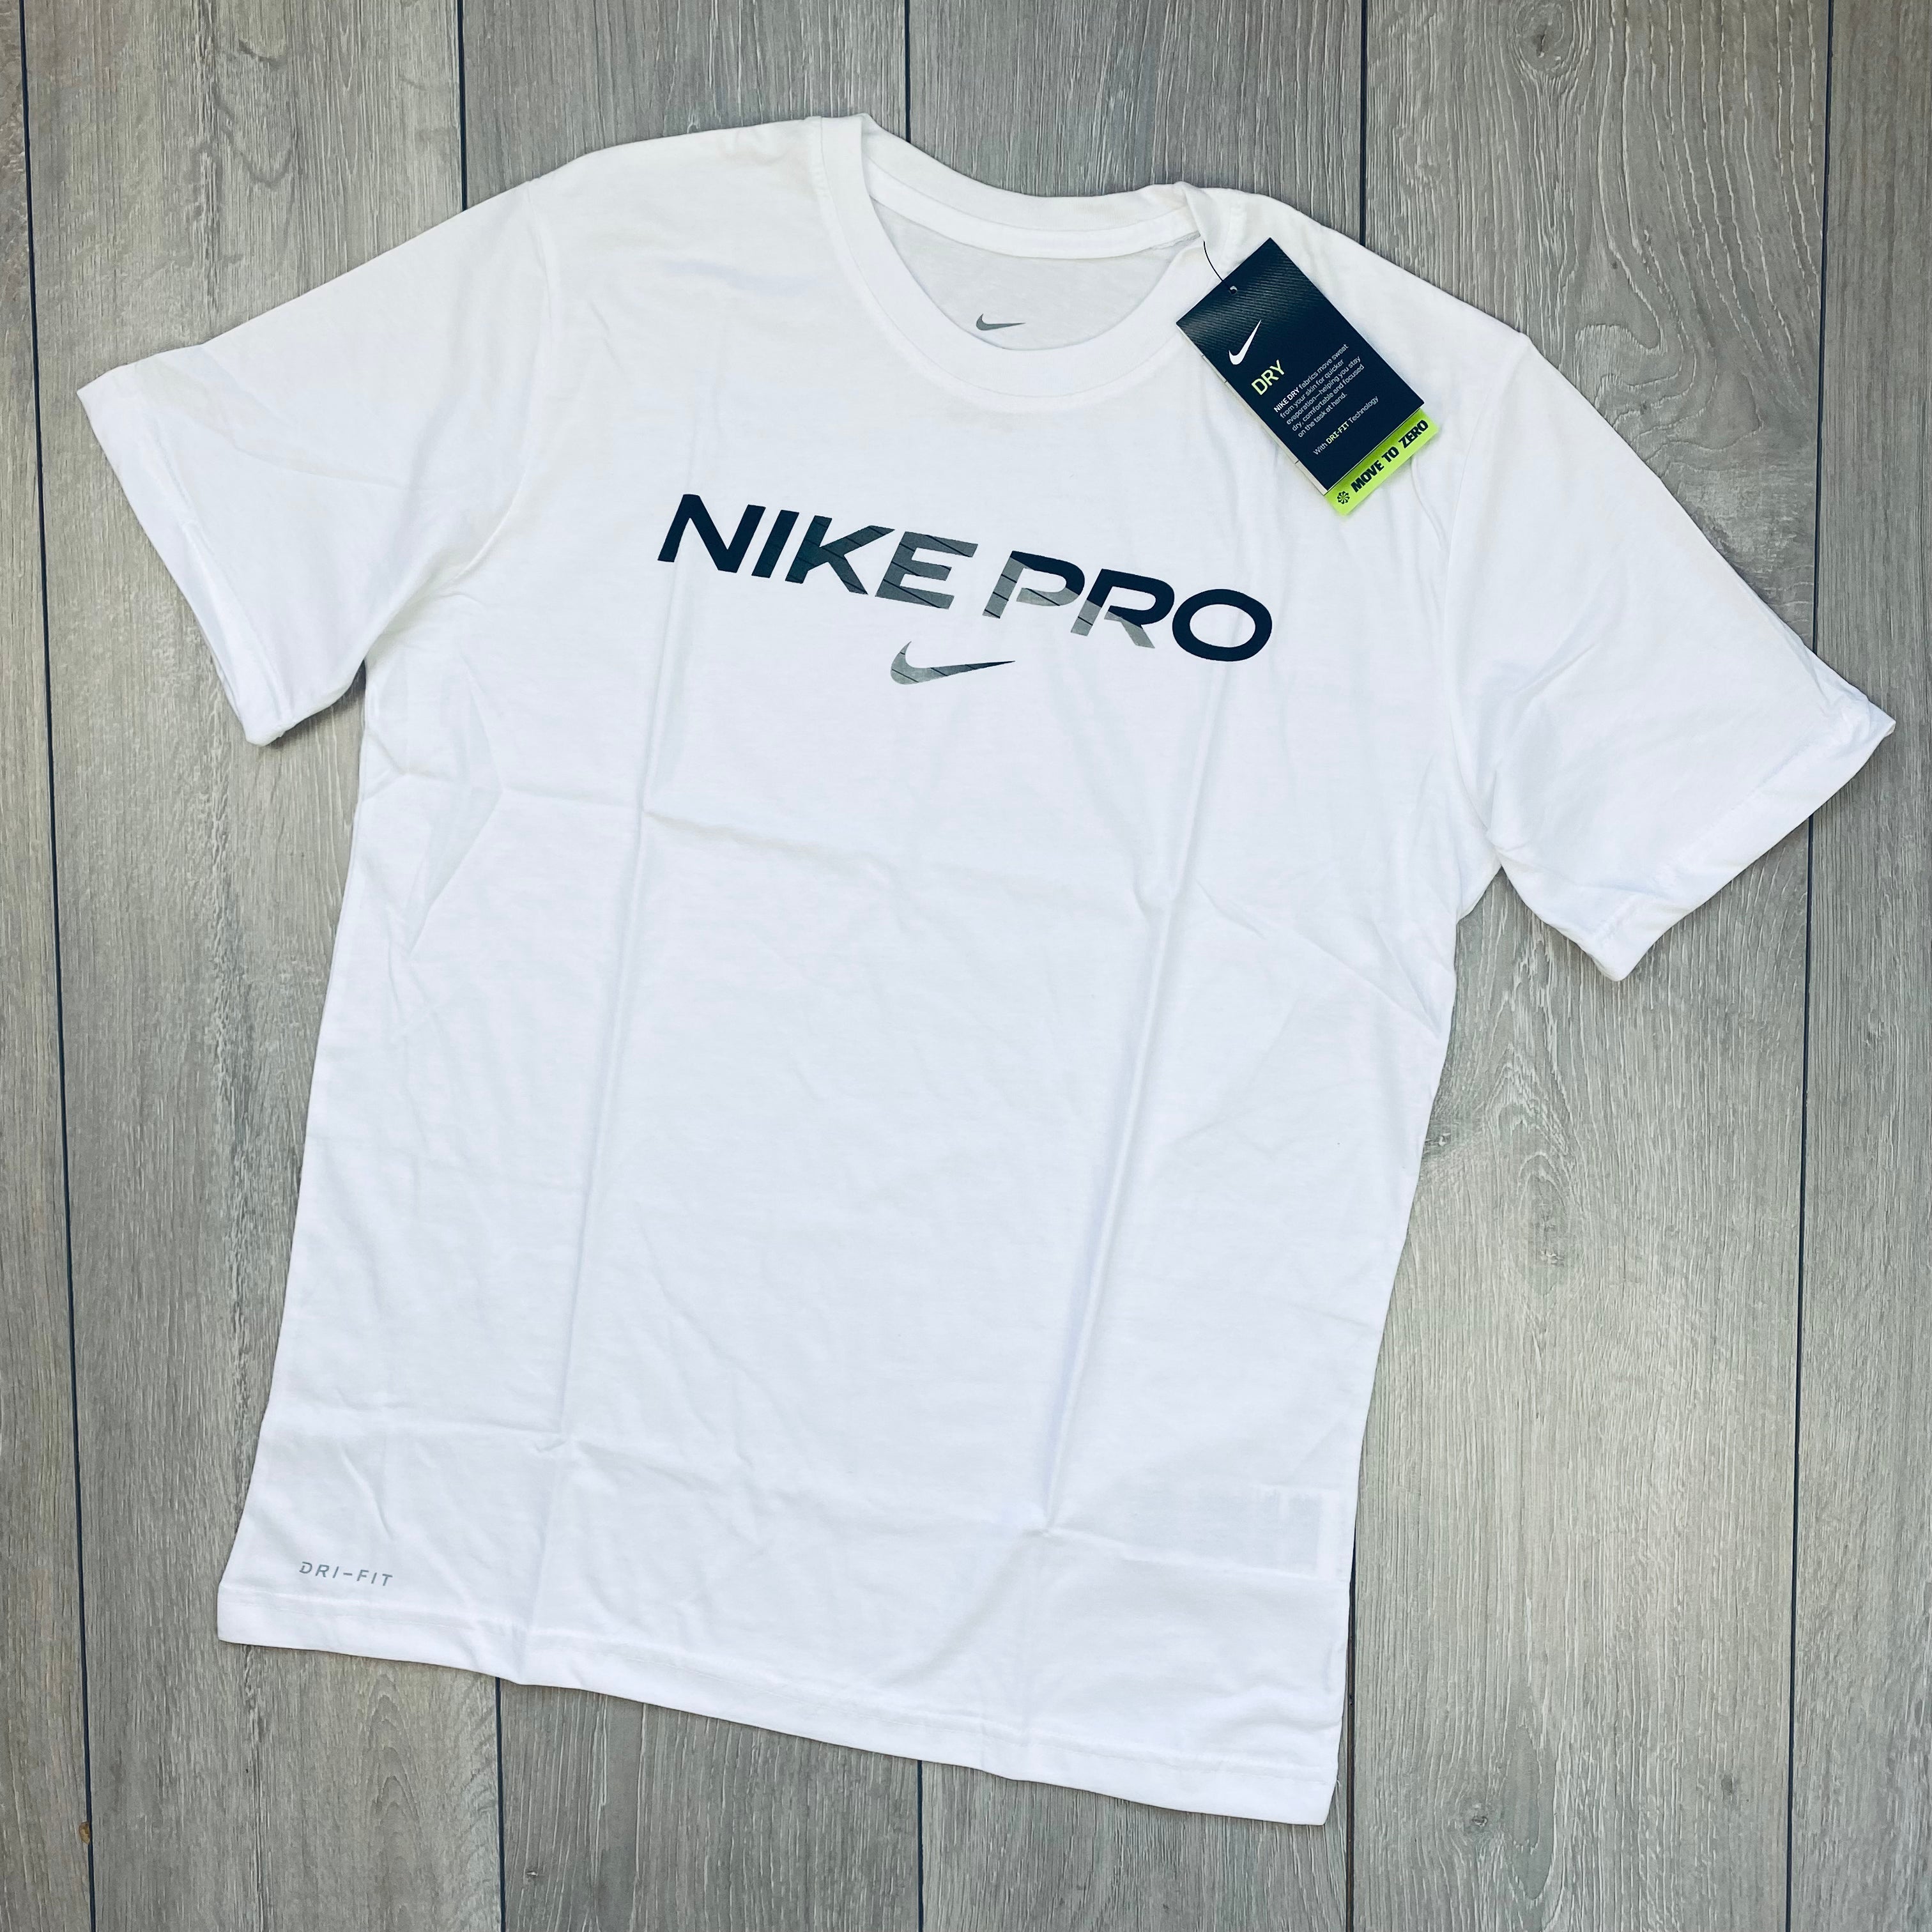 Nike Pro T-Shirt - White